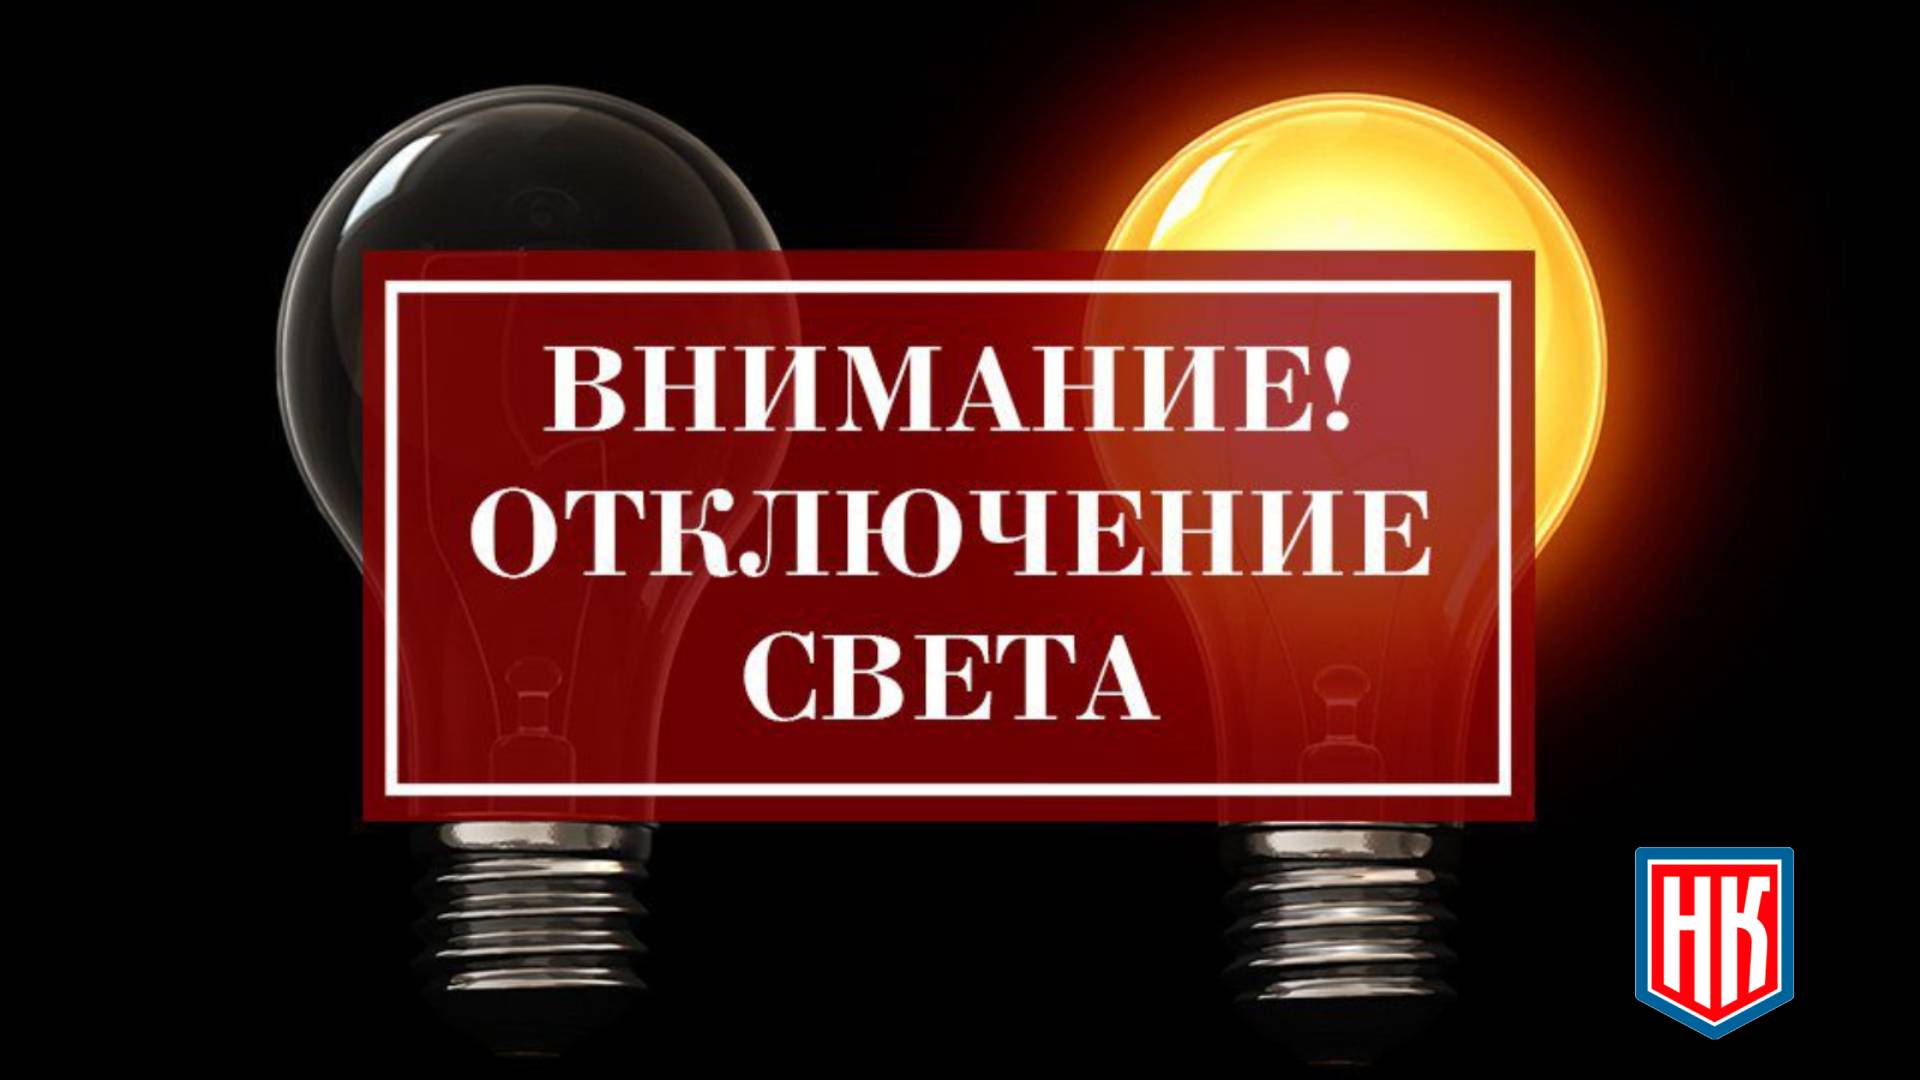 Просьбой урегулировать электроснабжение в селе Слободское Кстовского района